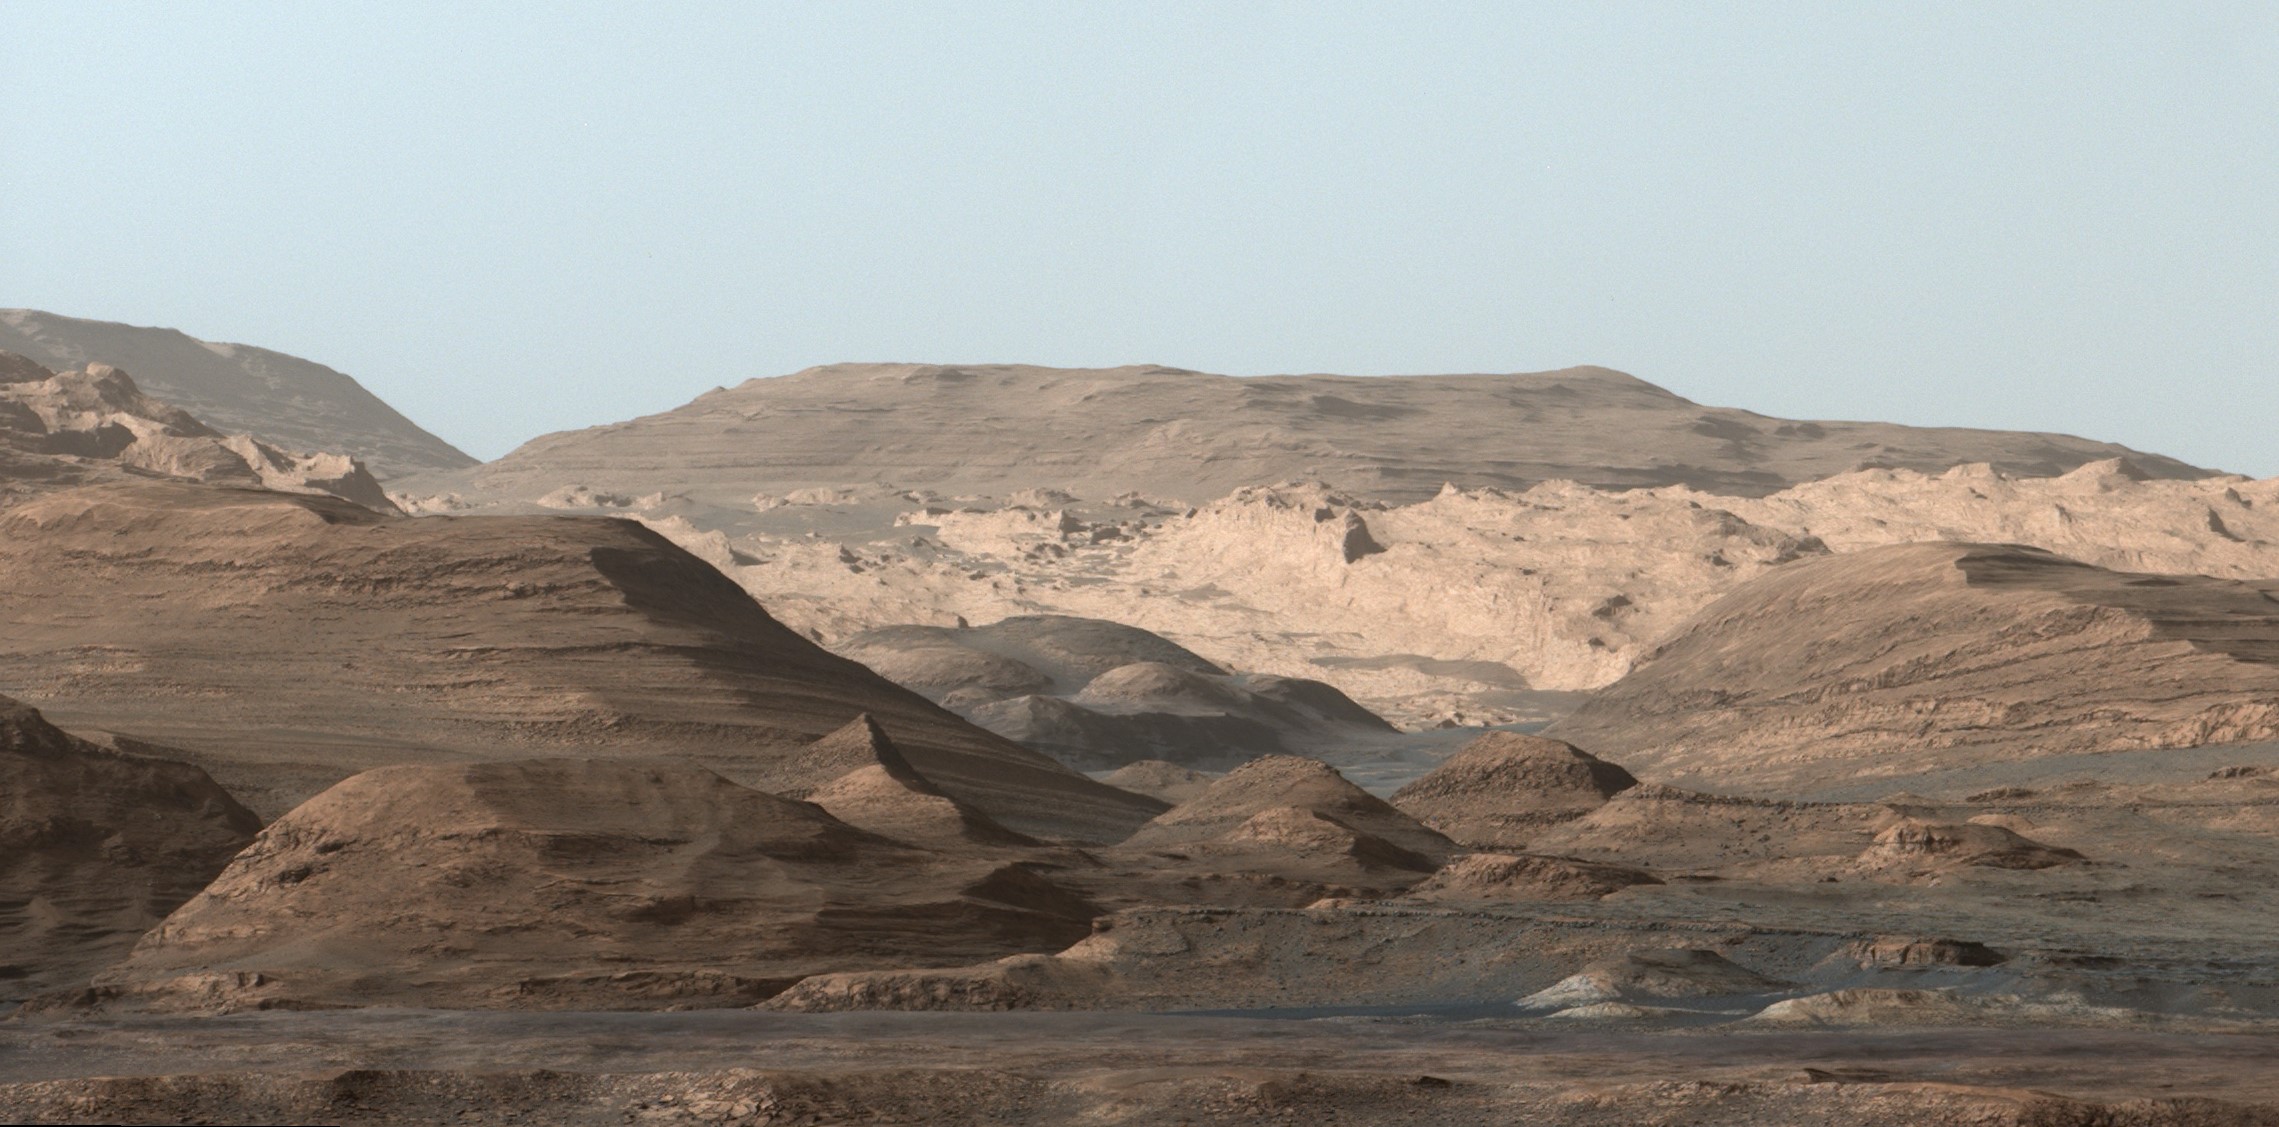 L'environnement martien photographié par Curiosity en 2015. © Nasa, JPL-Caltech, MSSS